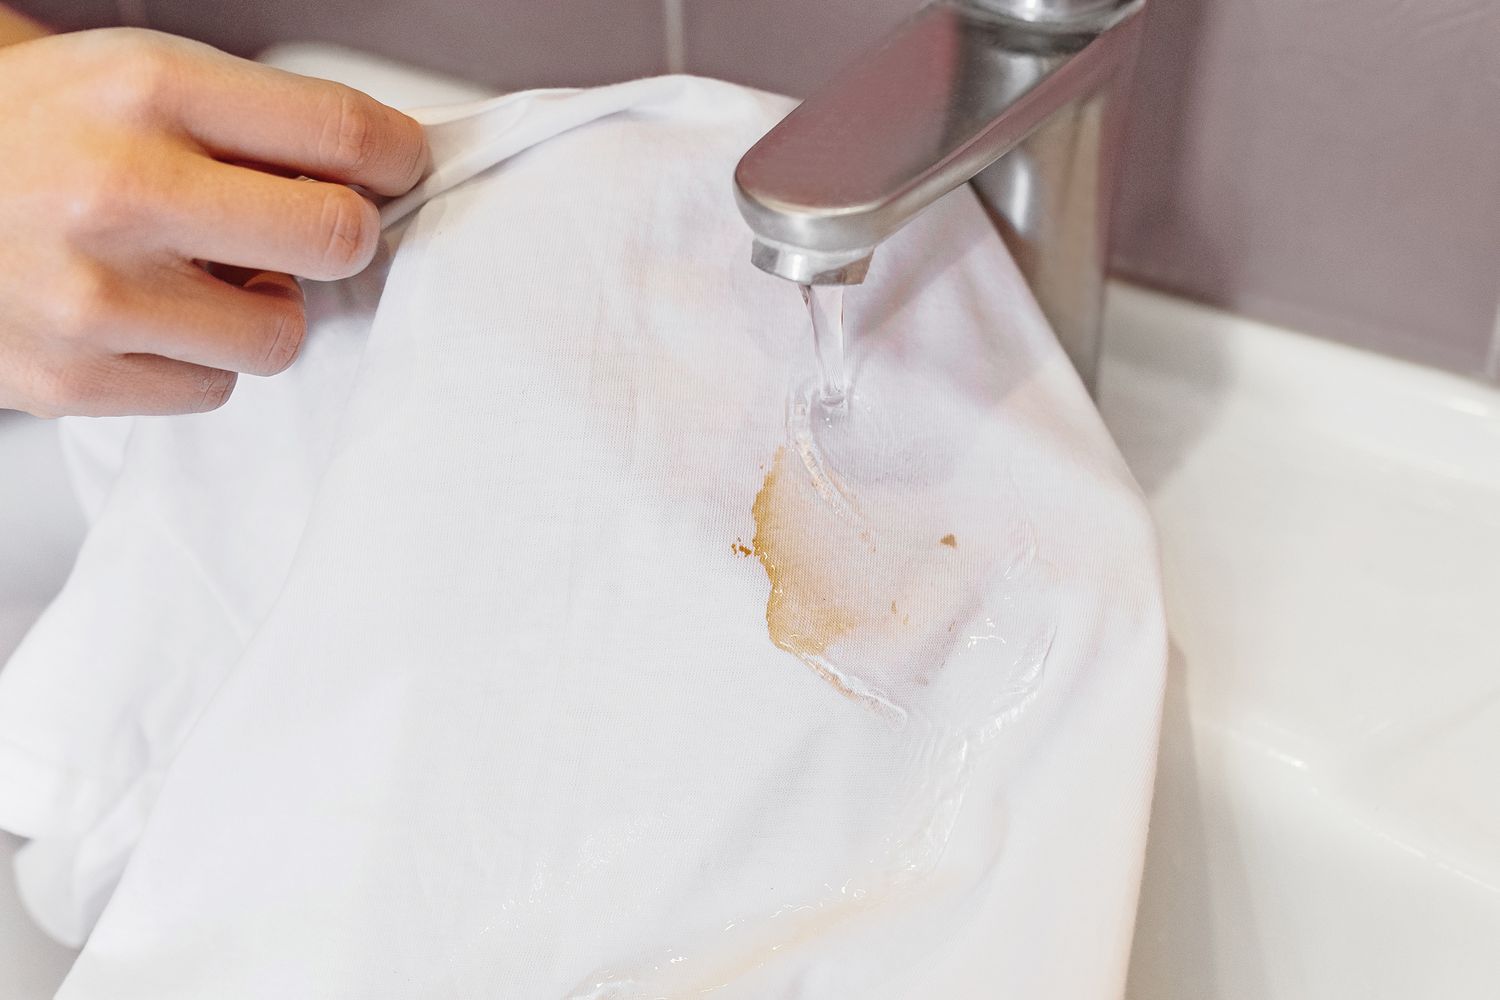 Camisa manchada de molho de soja enxaguada em água fria corrente